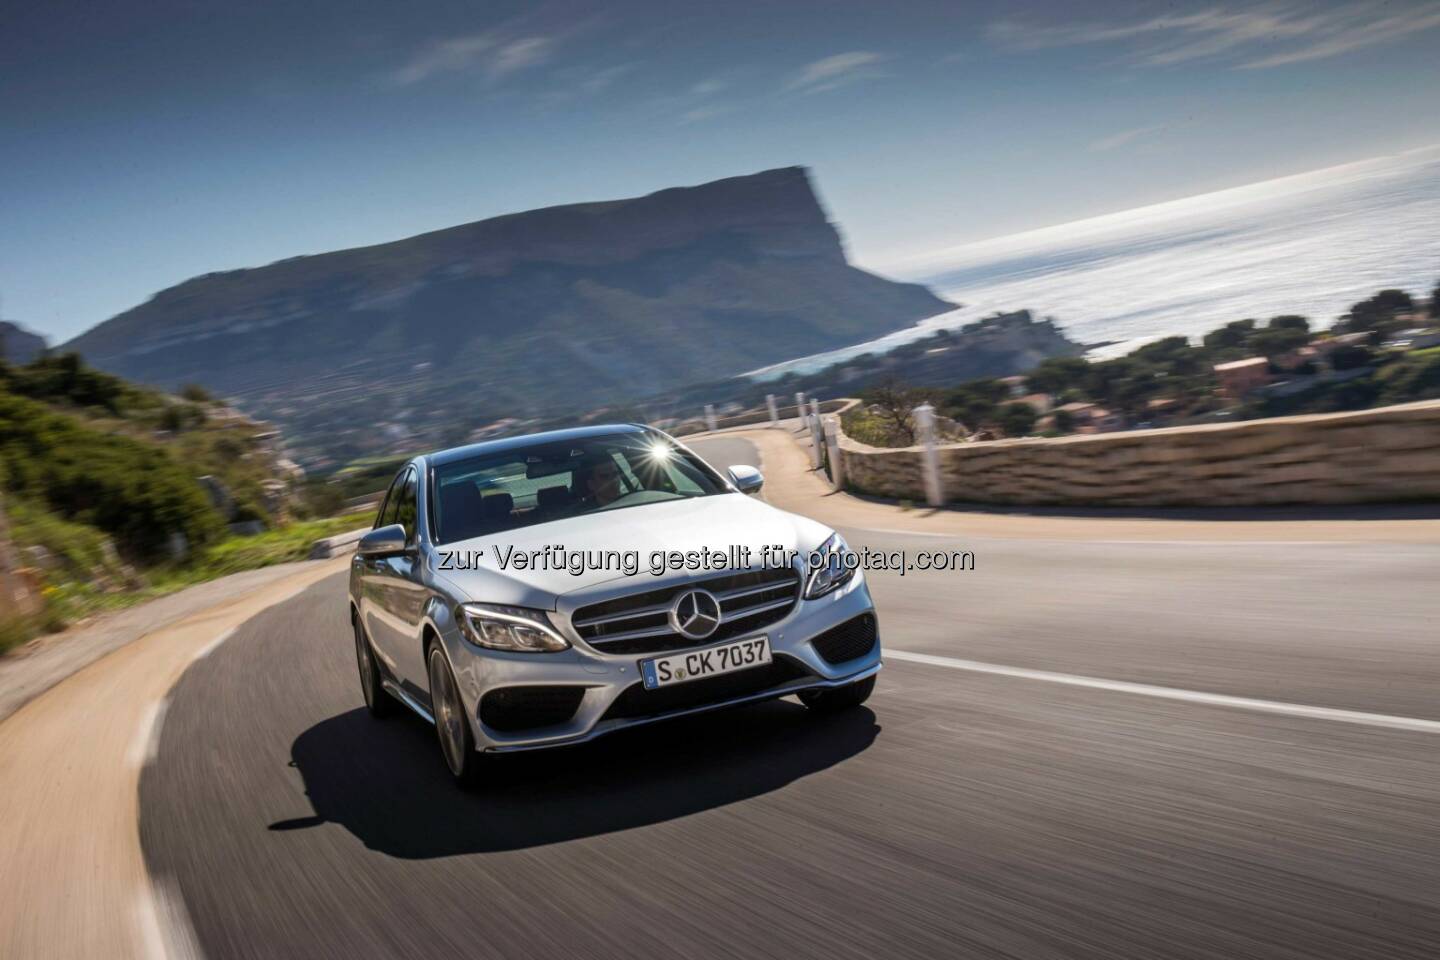 Mercedes-Benz Cars erzielt sieben Spitzenplätze im Ranking der „Restwertriesen 2019“
